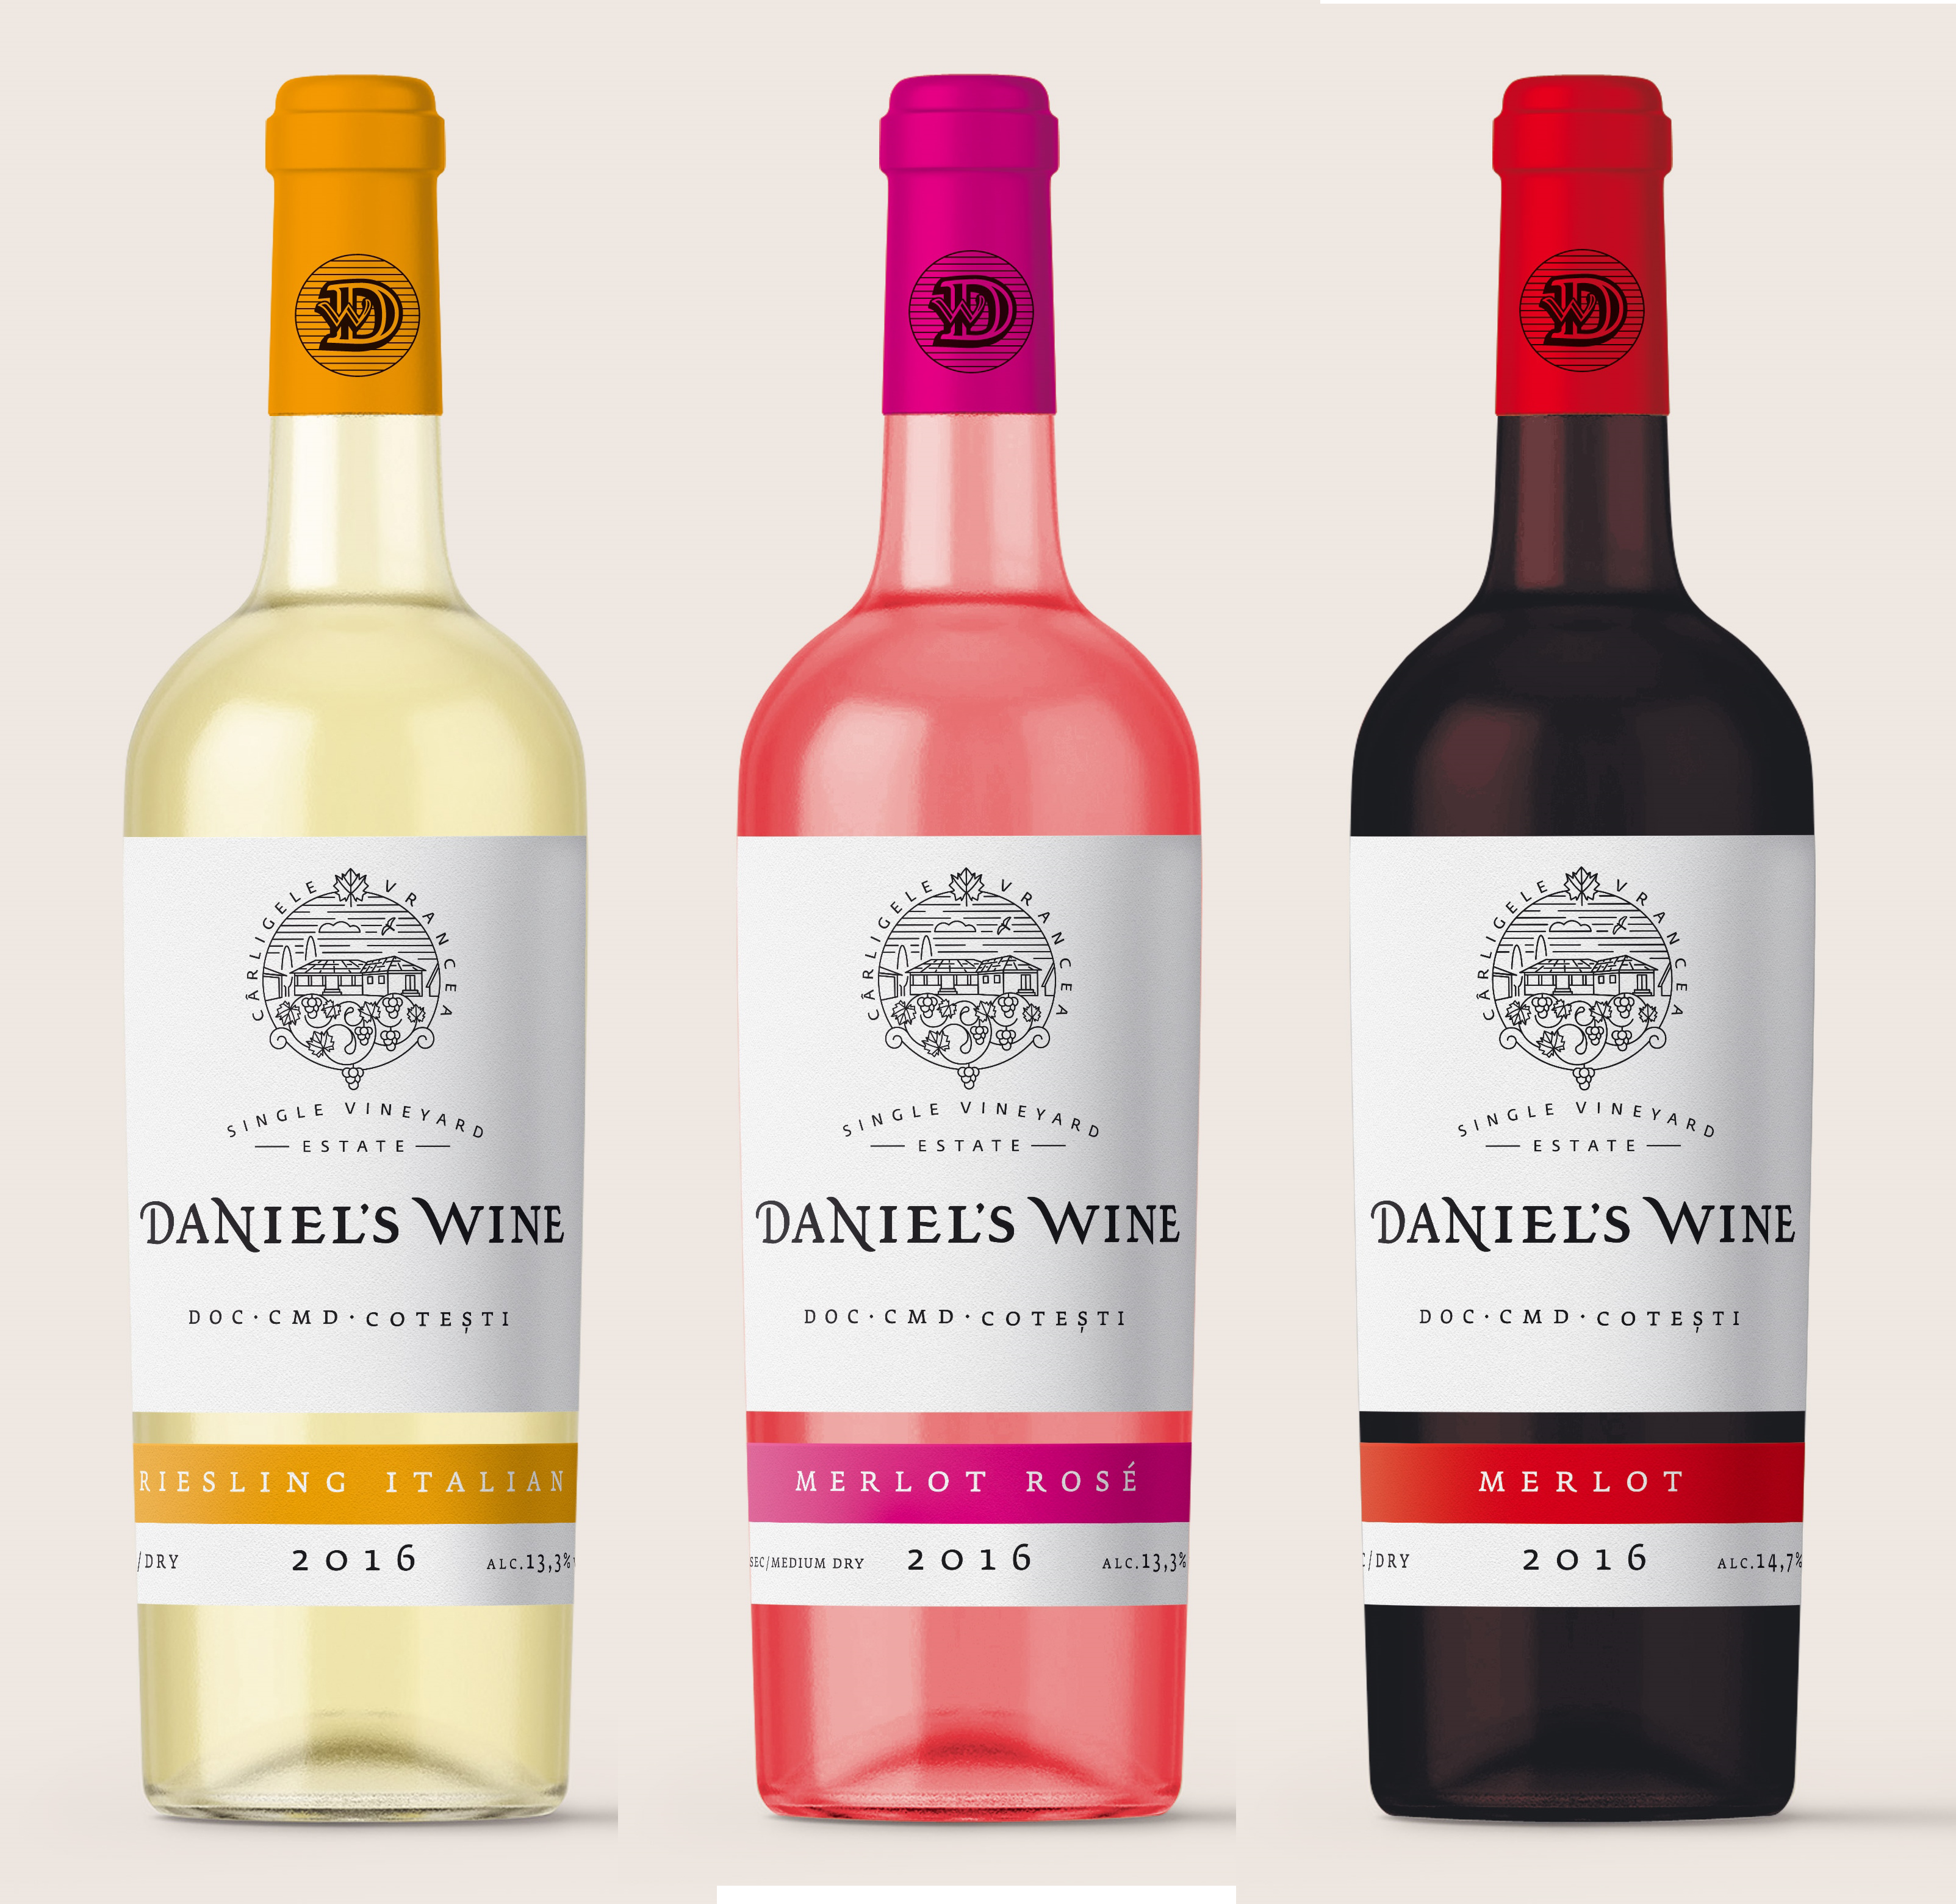 Daniels wine carligele